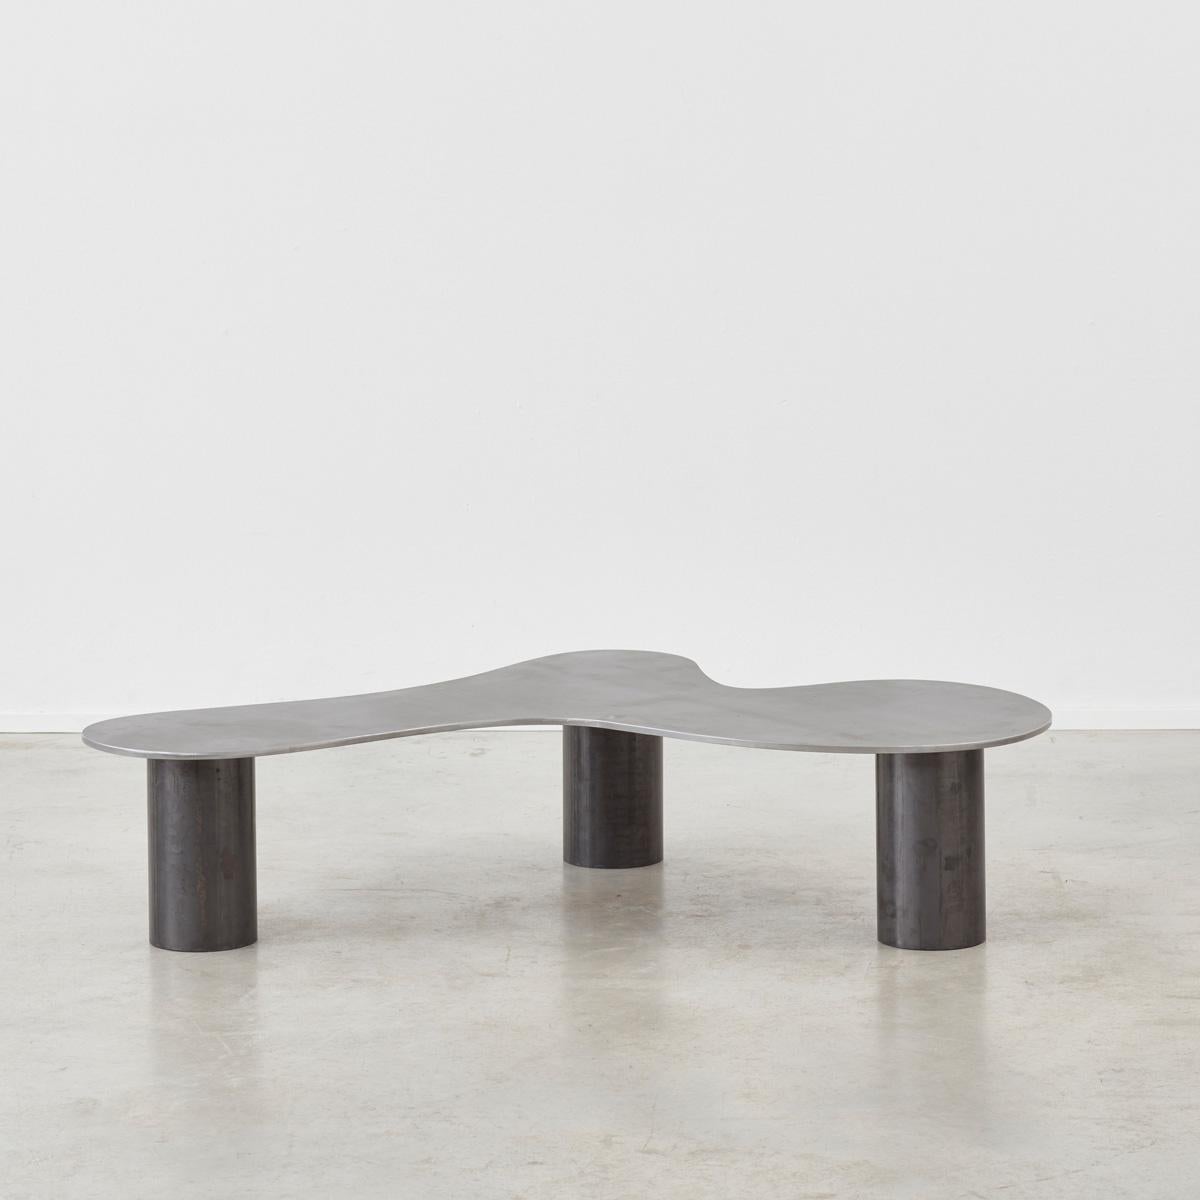 La table basse 001 est un design réalisé sur commande par Archive for Space, un cabinet de design multidisciplinaire fondé à Londres en 2019. La table basse 001 a été conçue pour célébrer l'acier brut en explorant la nature cyclique du matériau.